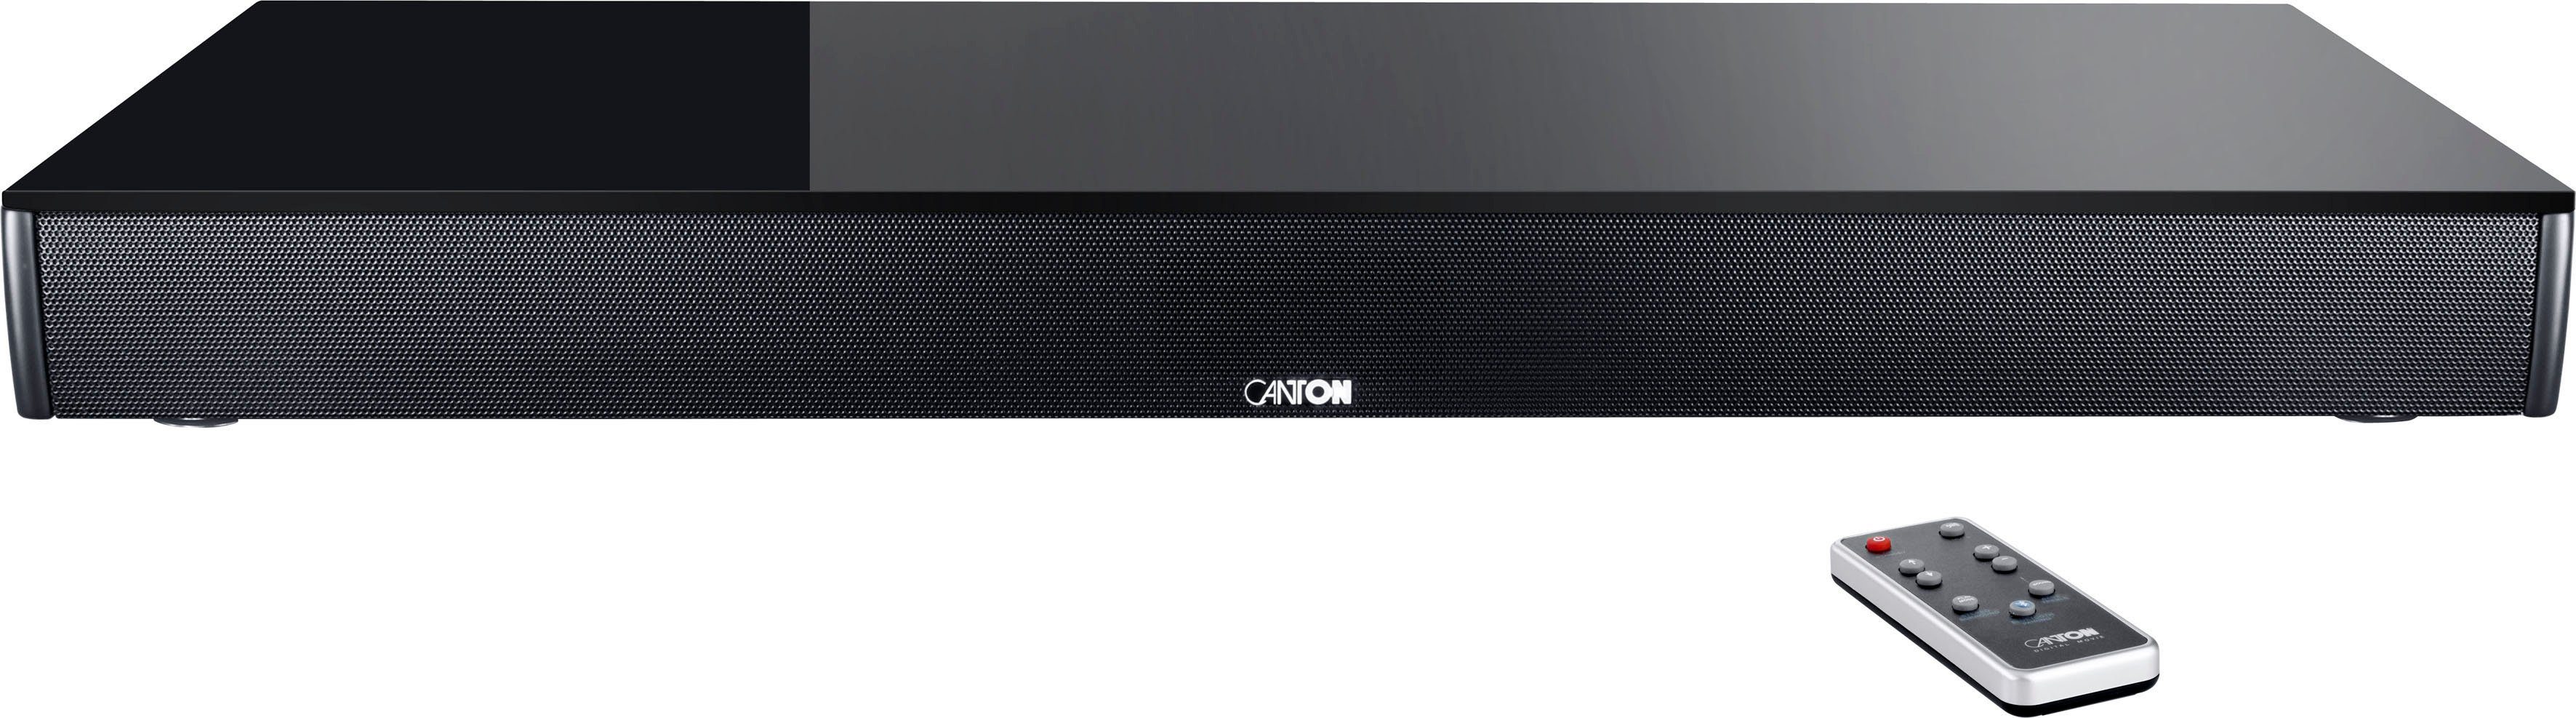 CANTON DM 60 2.1 Soundbar (Bluetooth, W) 200